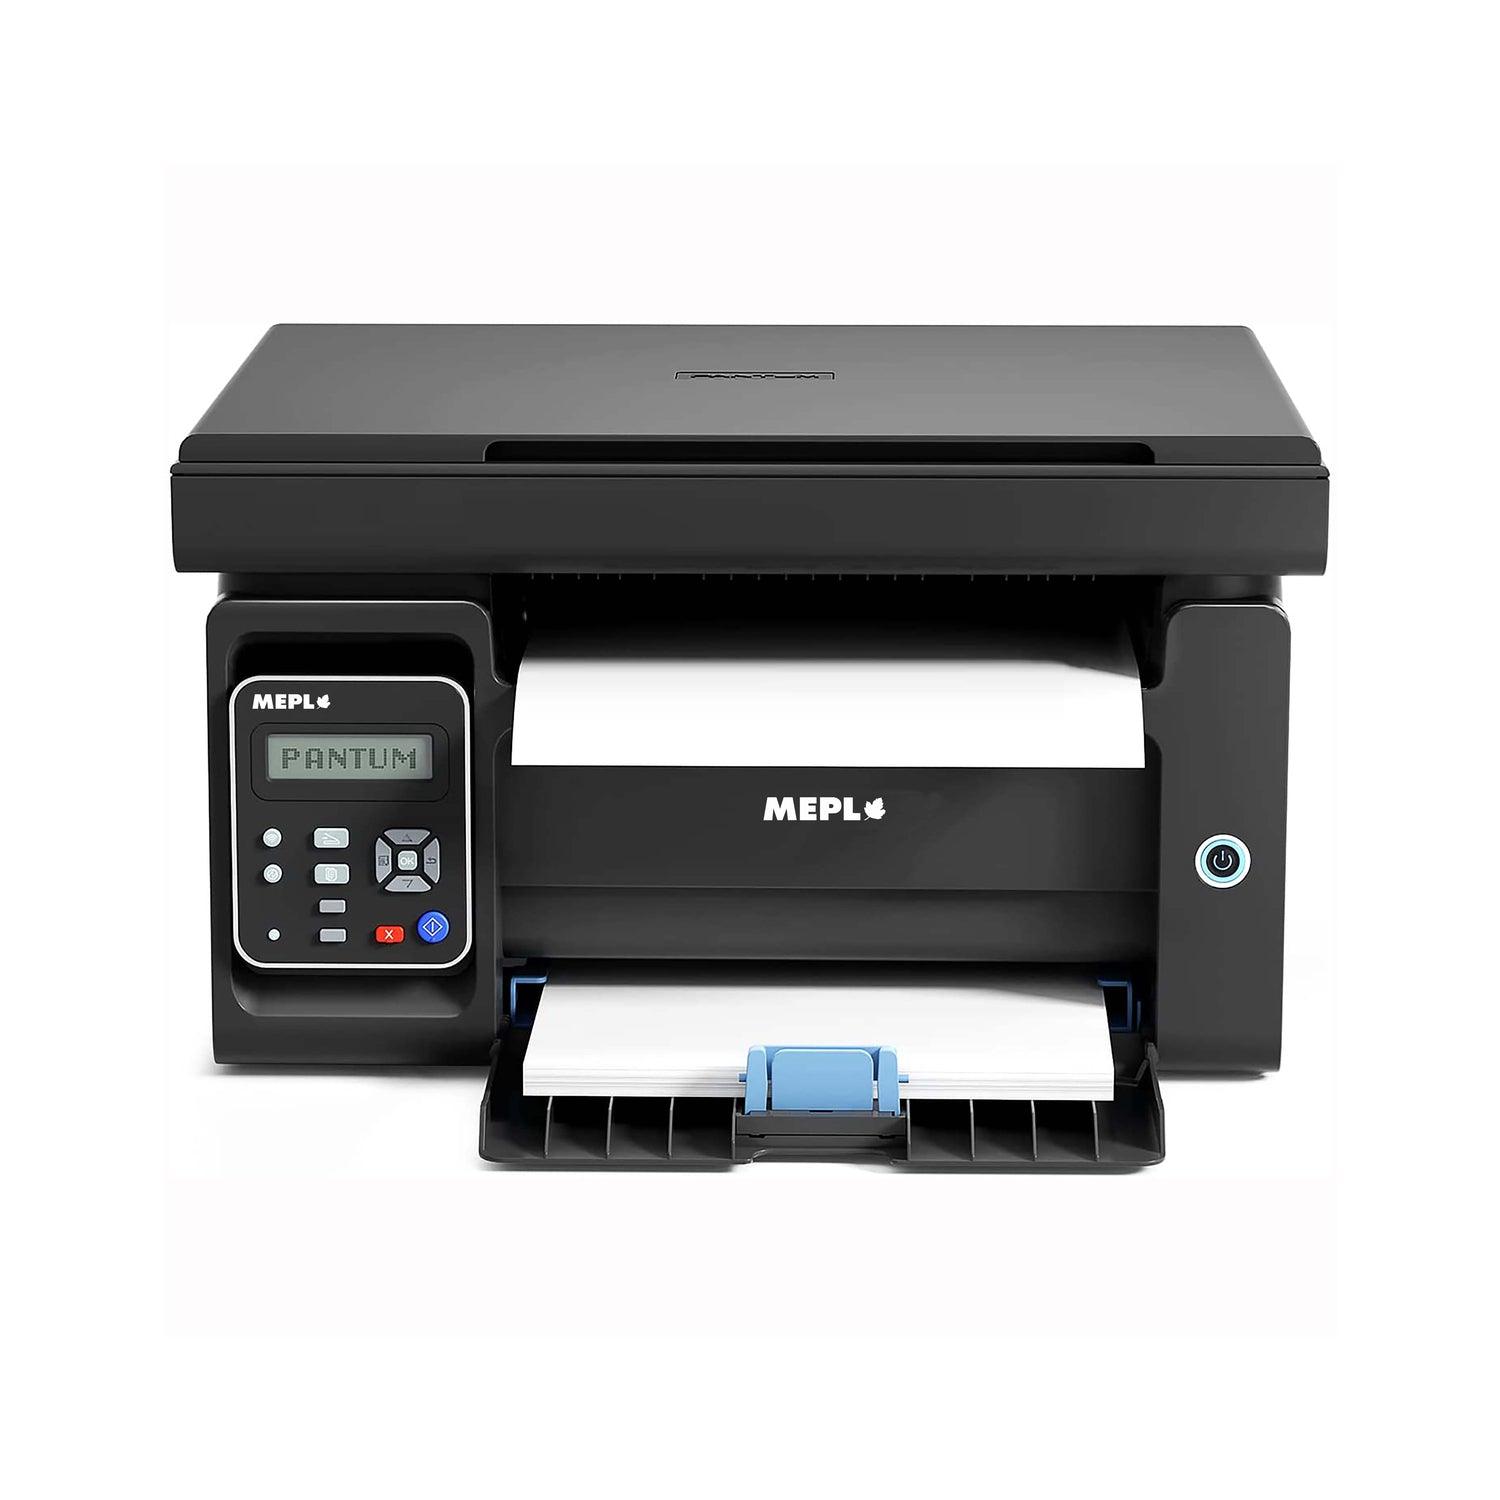 MEPL MM6503 Printer Multi-function Monochrome Laser Printer - mepl.store